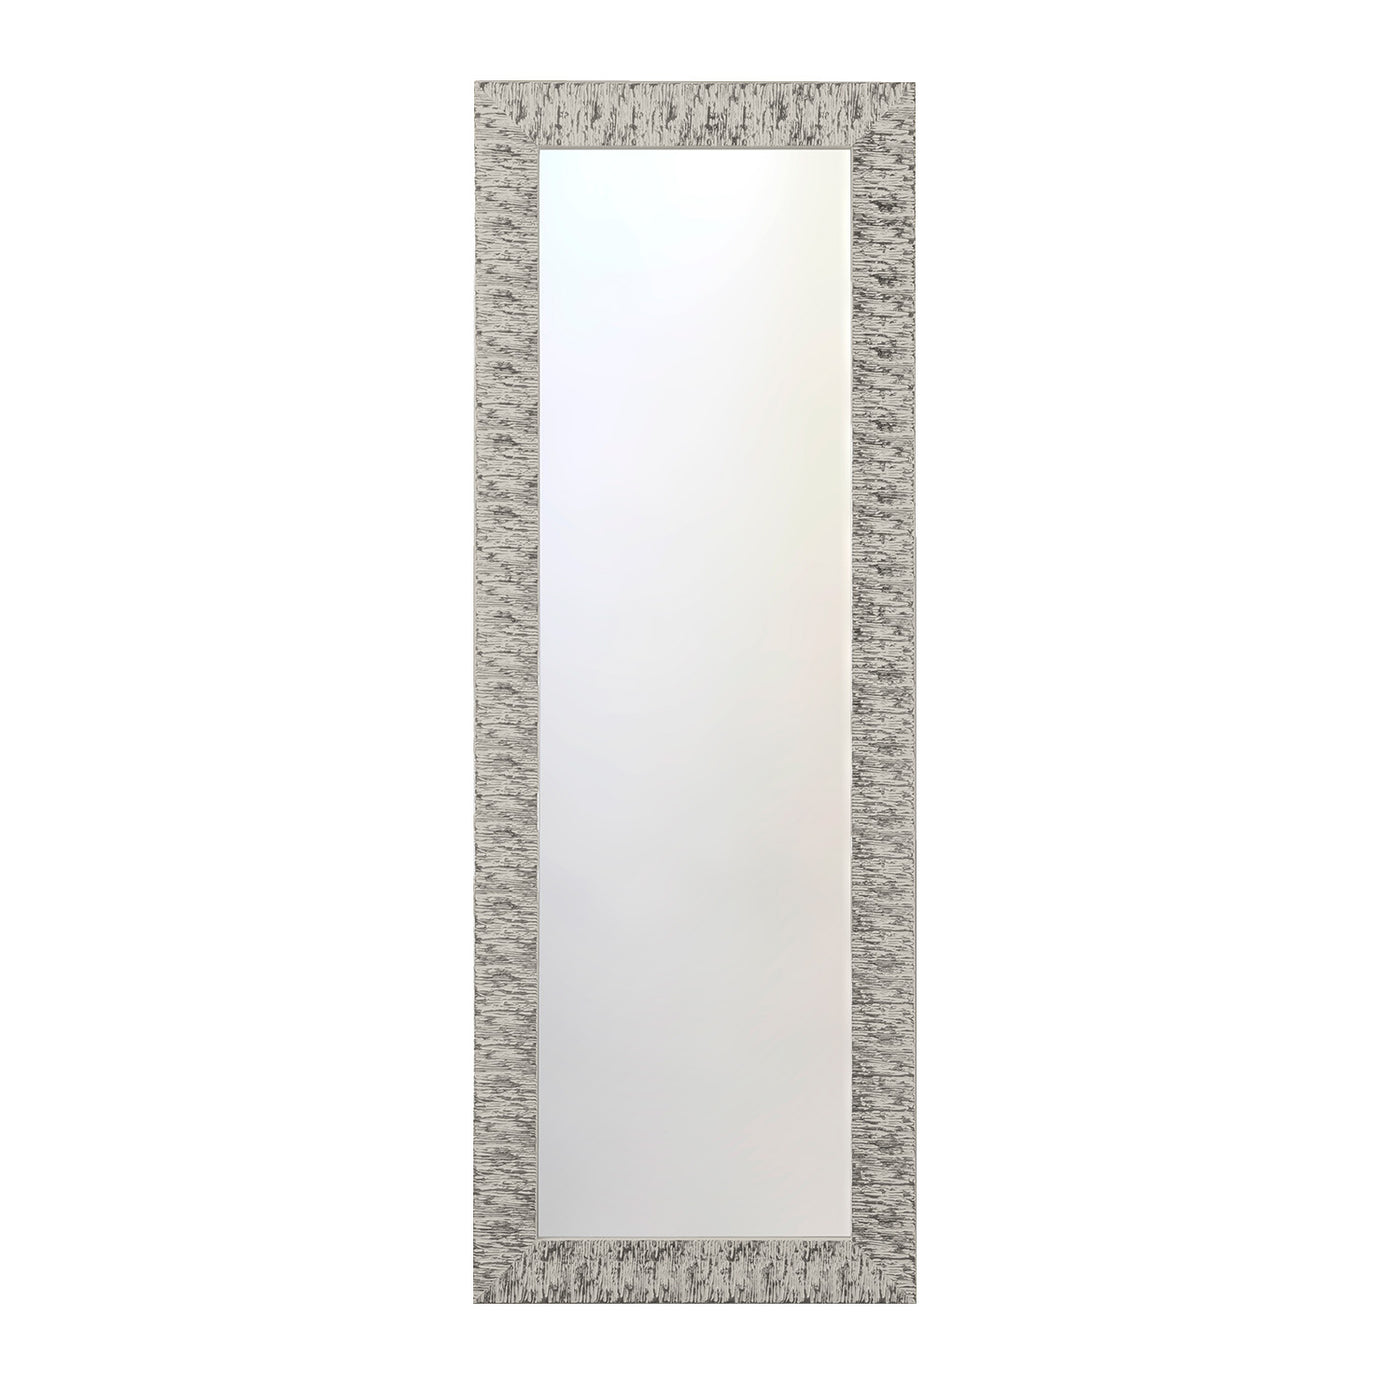 MINSK silver wall mirror